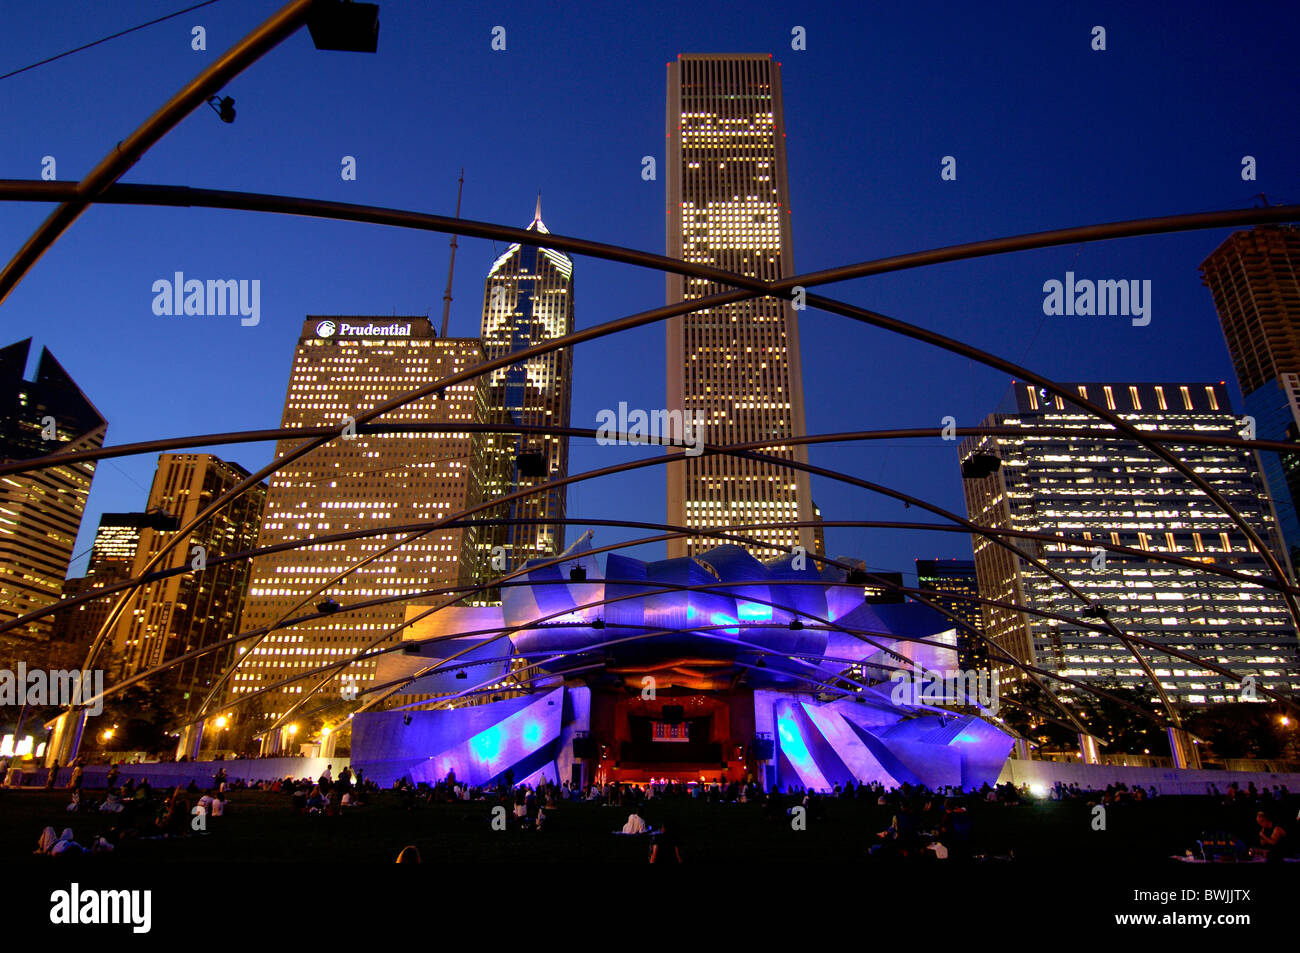 Jay Pritzker Pavilion von Frank Gehry an Nacht Nacht Architektur modern Kunst Fertigkeit Kultur Person Abenddämmerung tw Stockfoto